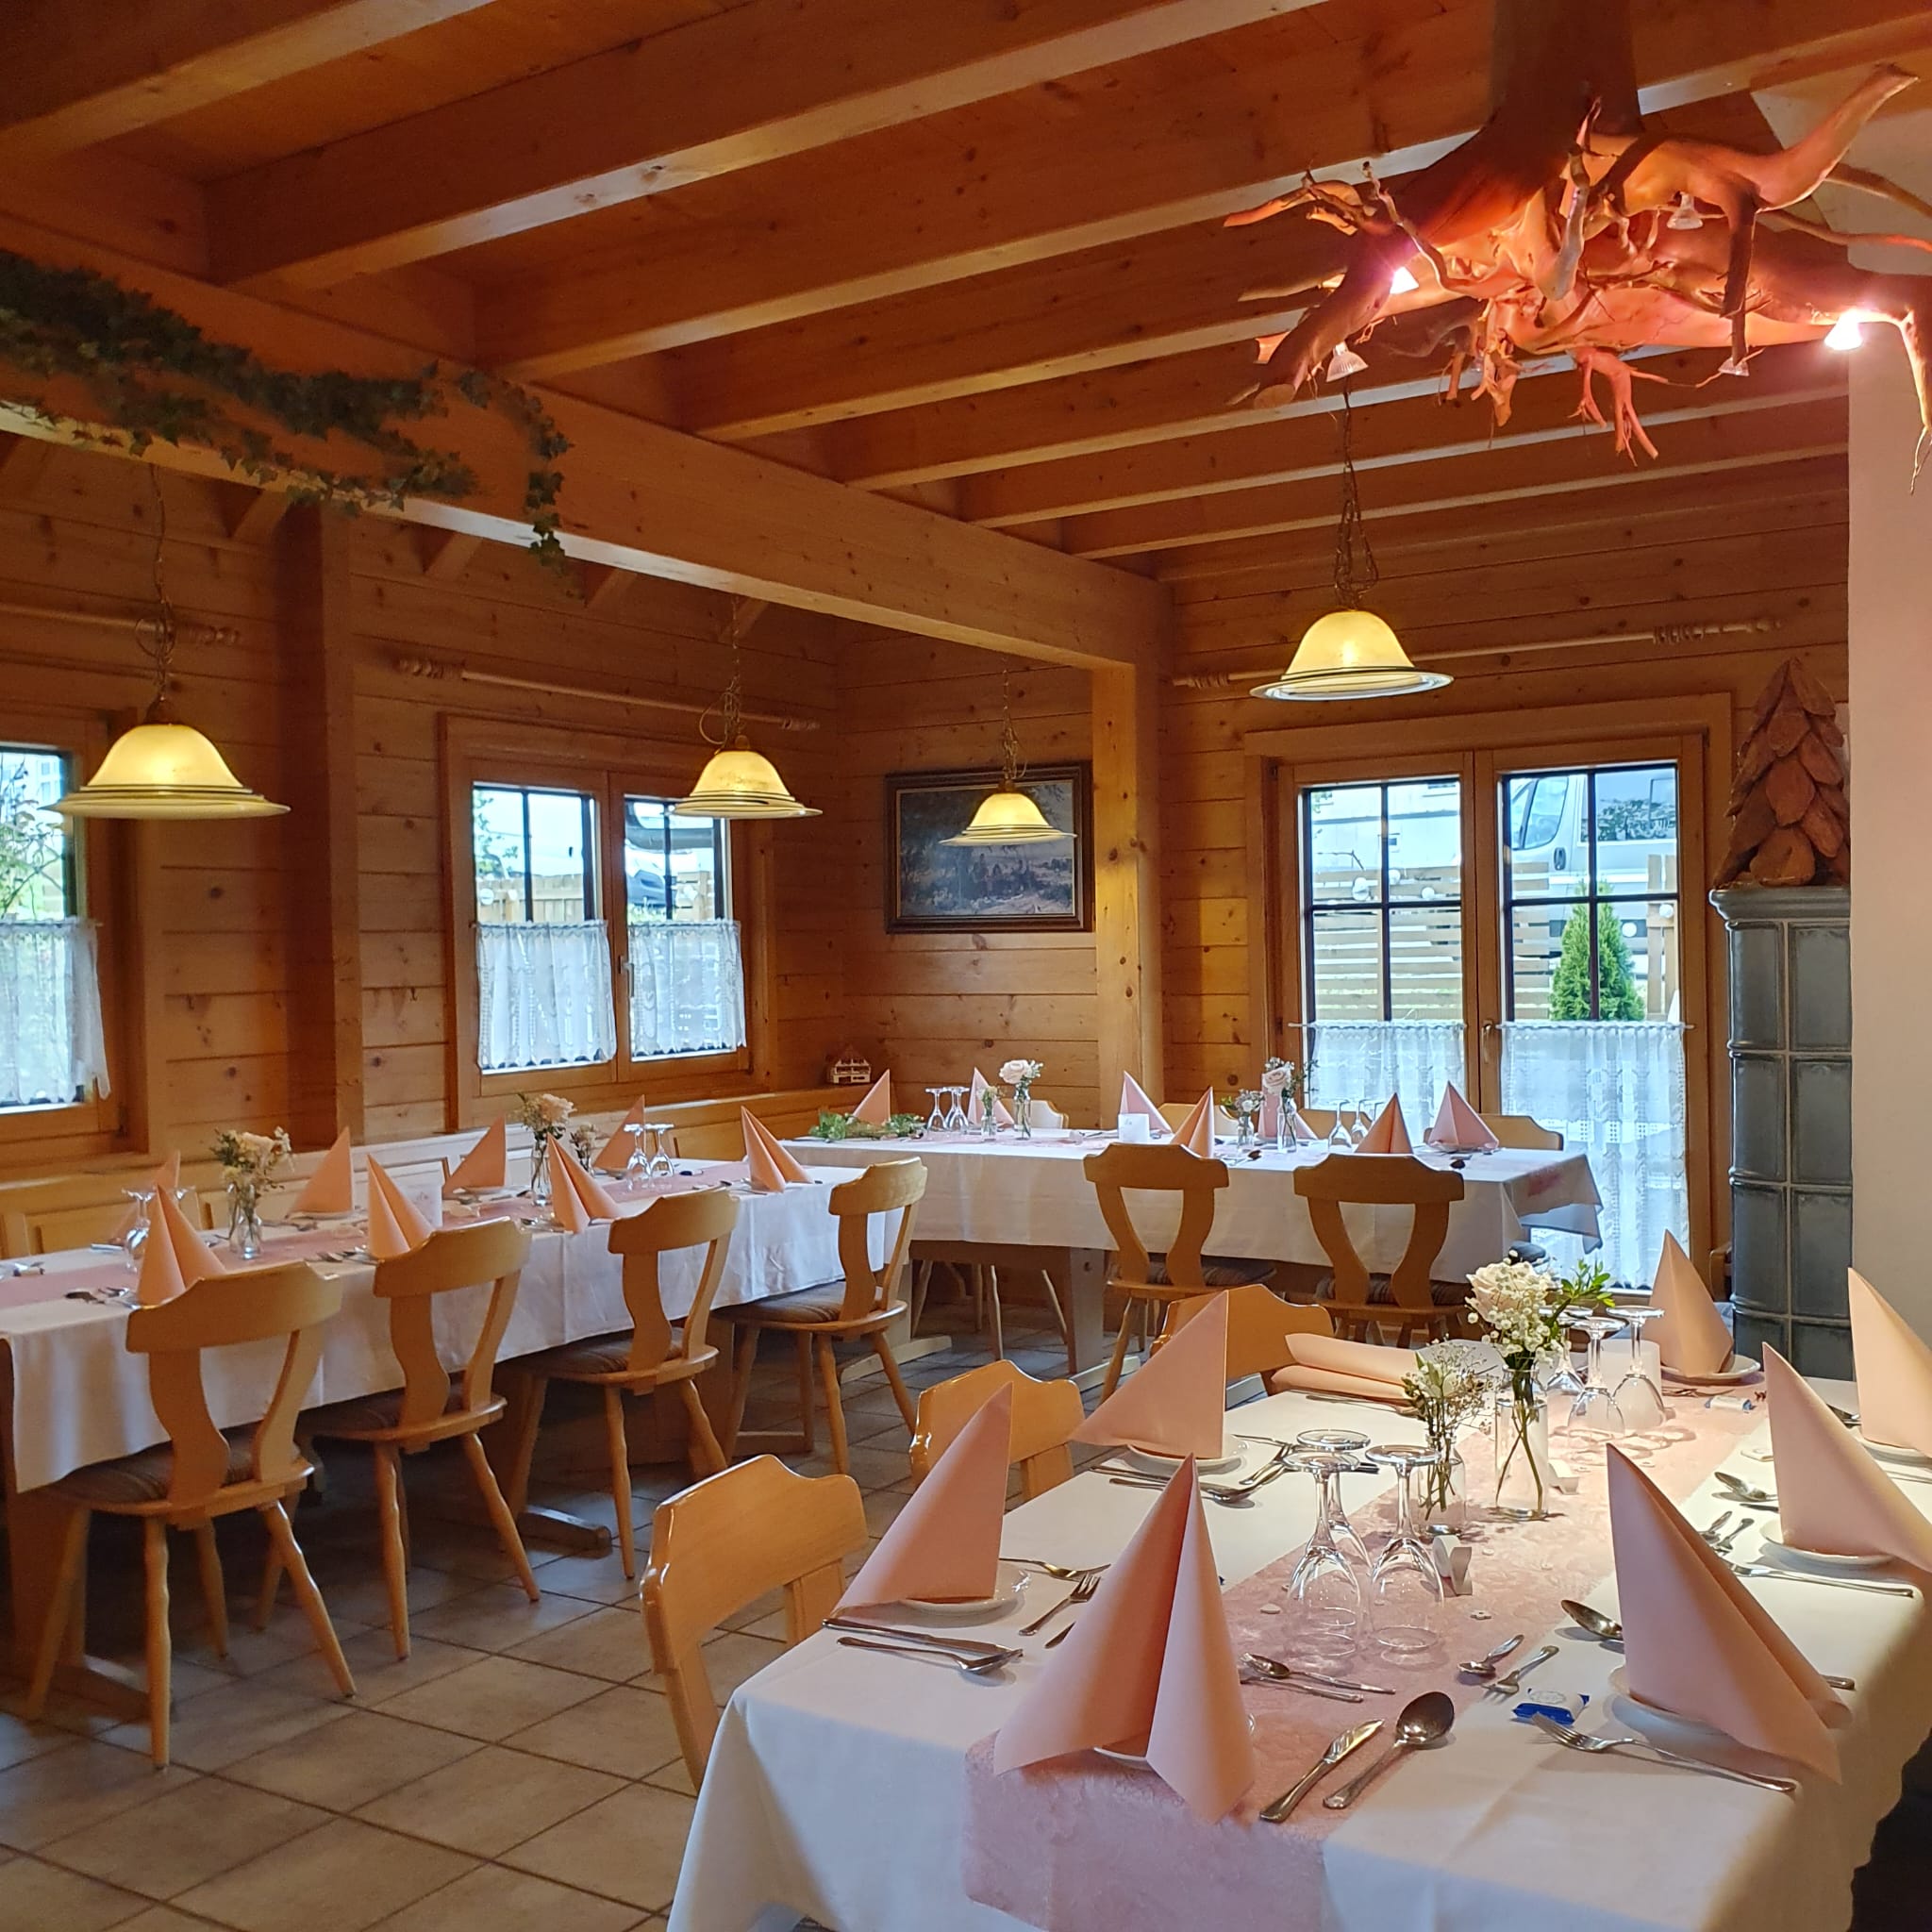 Innenansicht des Restaurants Schindelstube in Bösingen bei Pfalzgrafenweiler